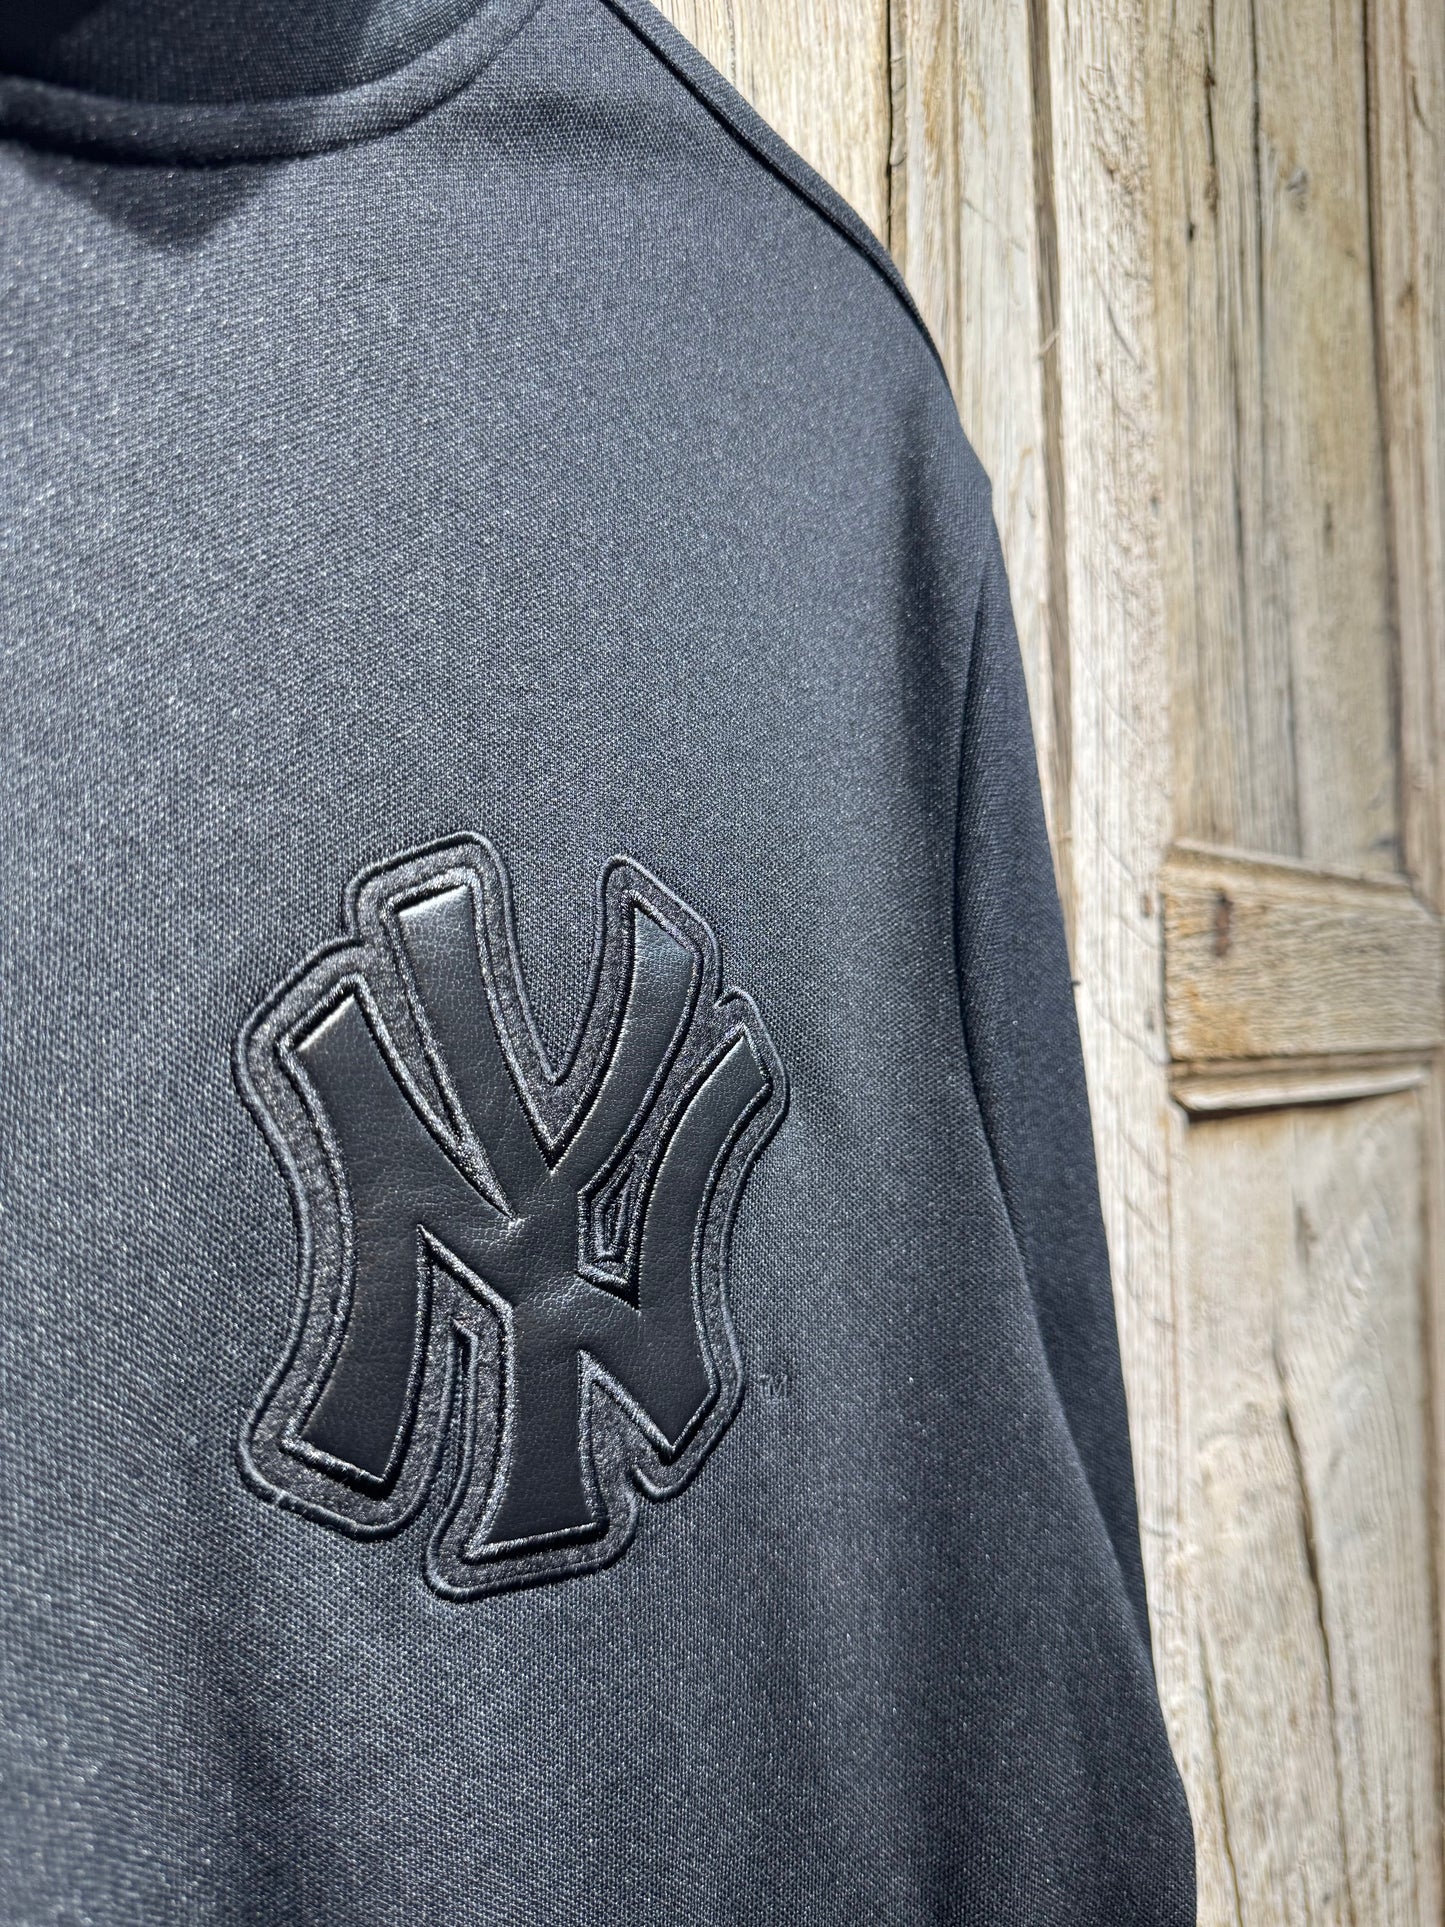 Vintage Black Nike NY Yankees Jacket